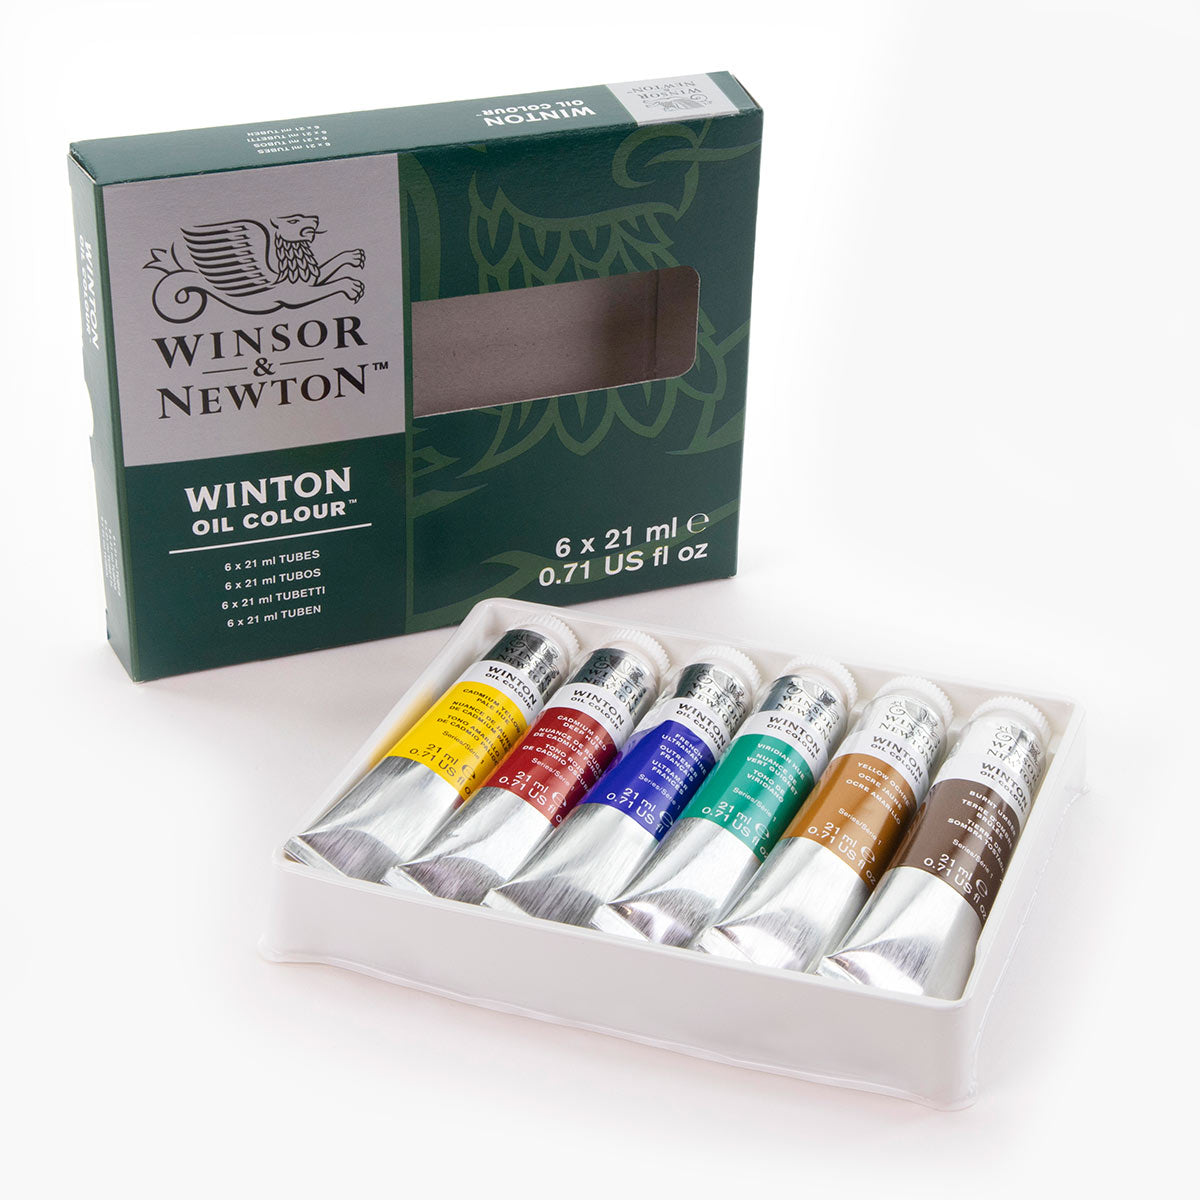 Winsor e Newton - Colore olio Winton - 6 x 21 ml Set di base